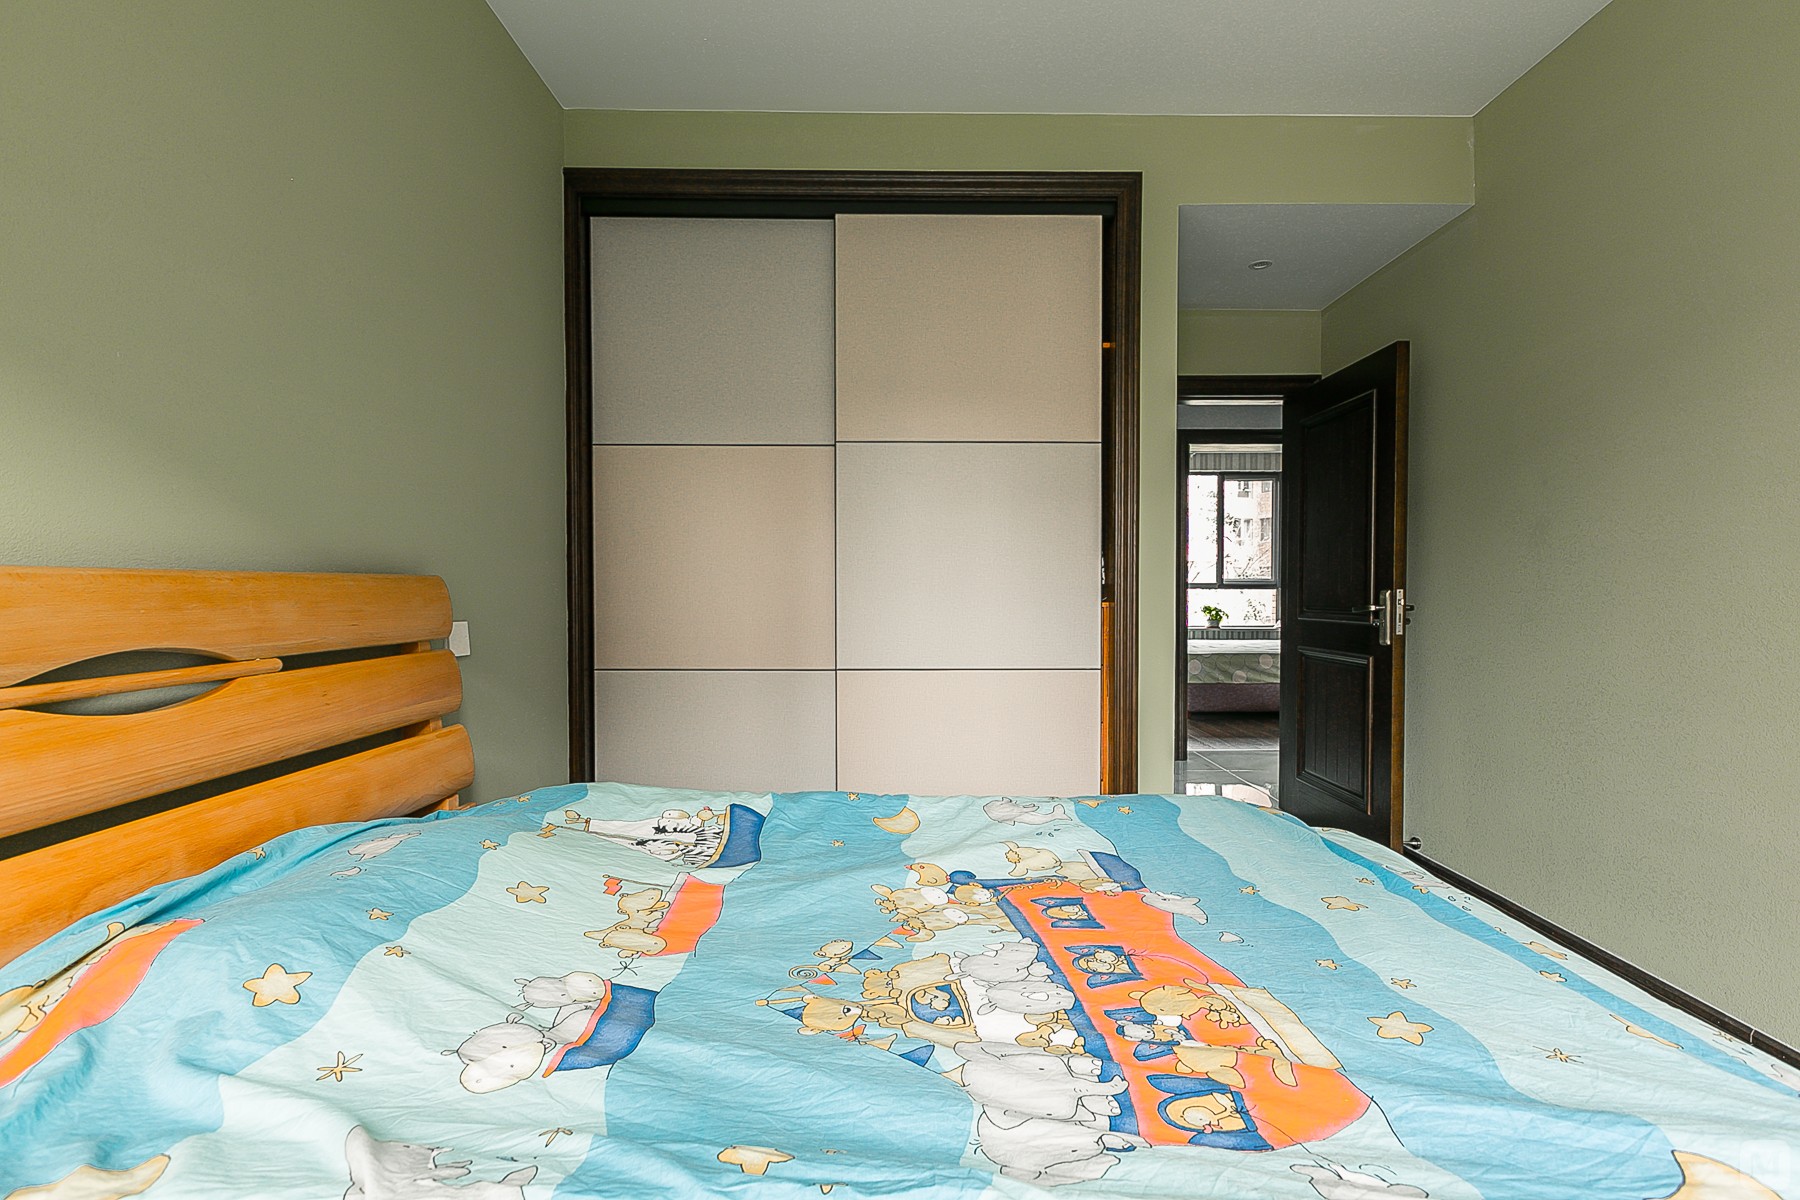 因为考虑到儿童房，环保放在了第一位，墙面选择硅藻泥，绿色作为主色调，搭配了北欧风的家具。整个儿童房十分的清新。